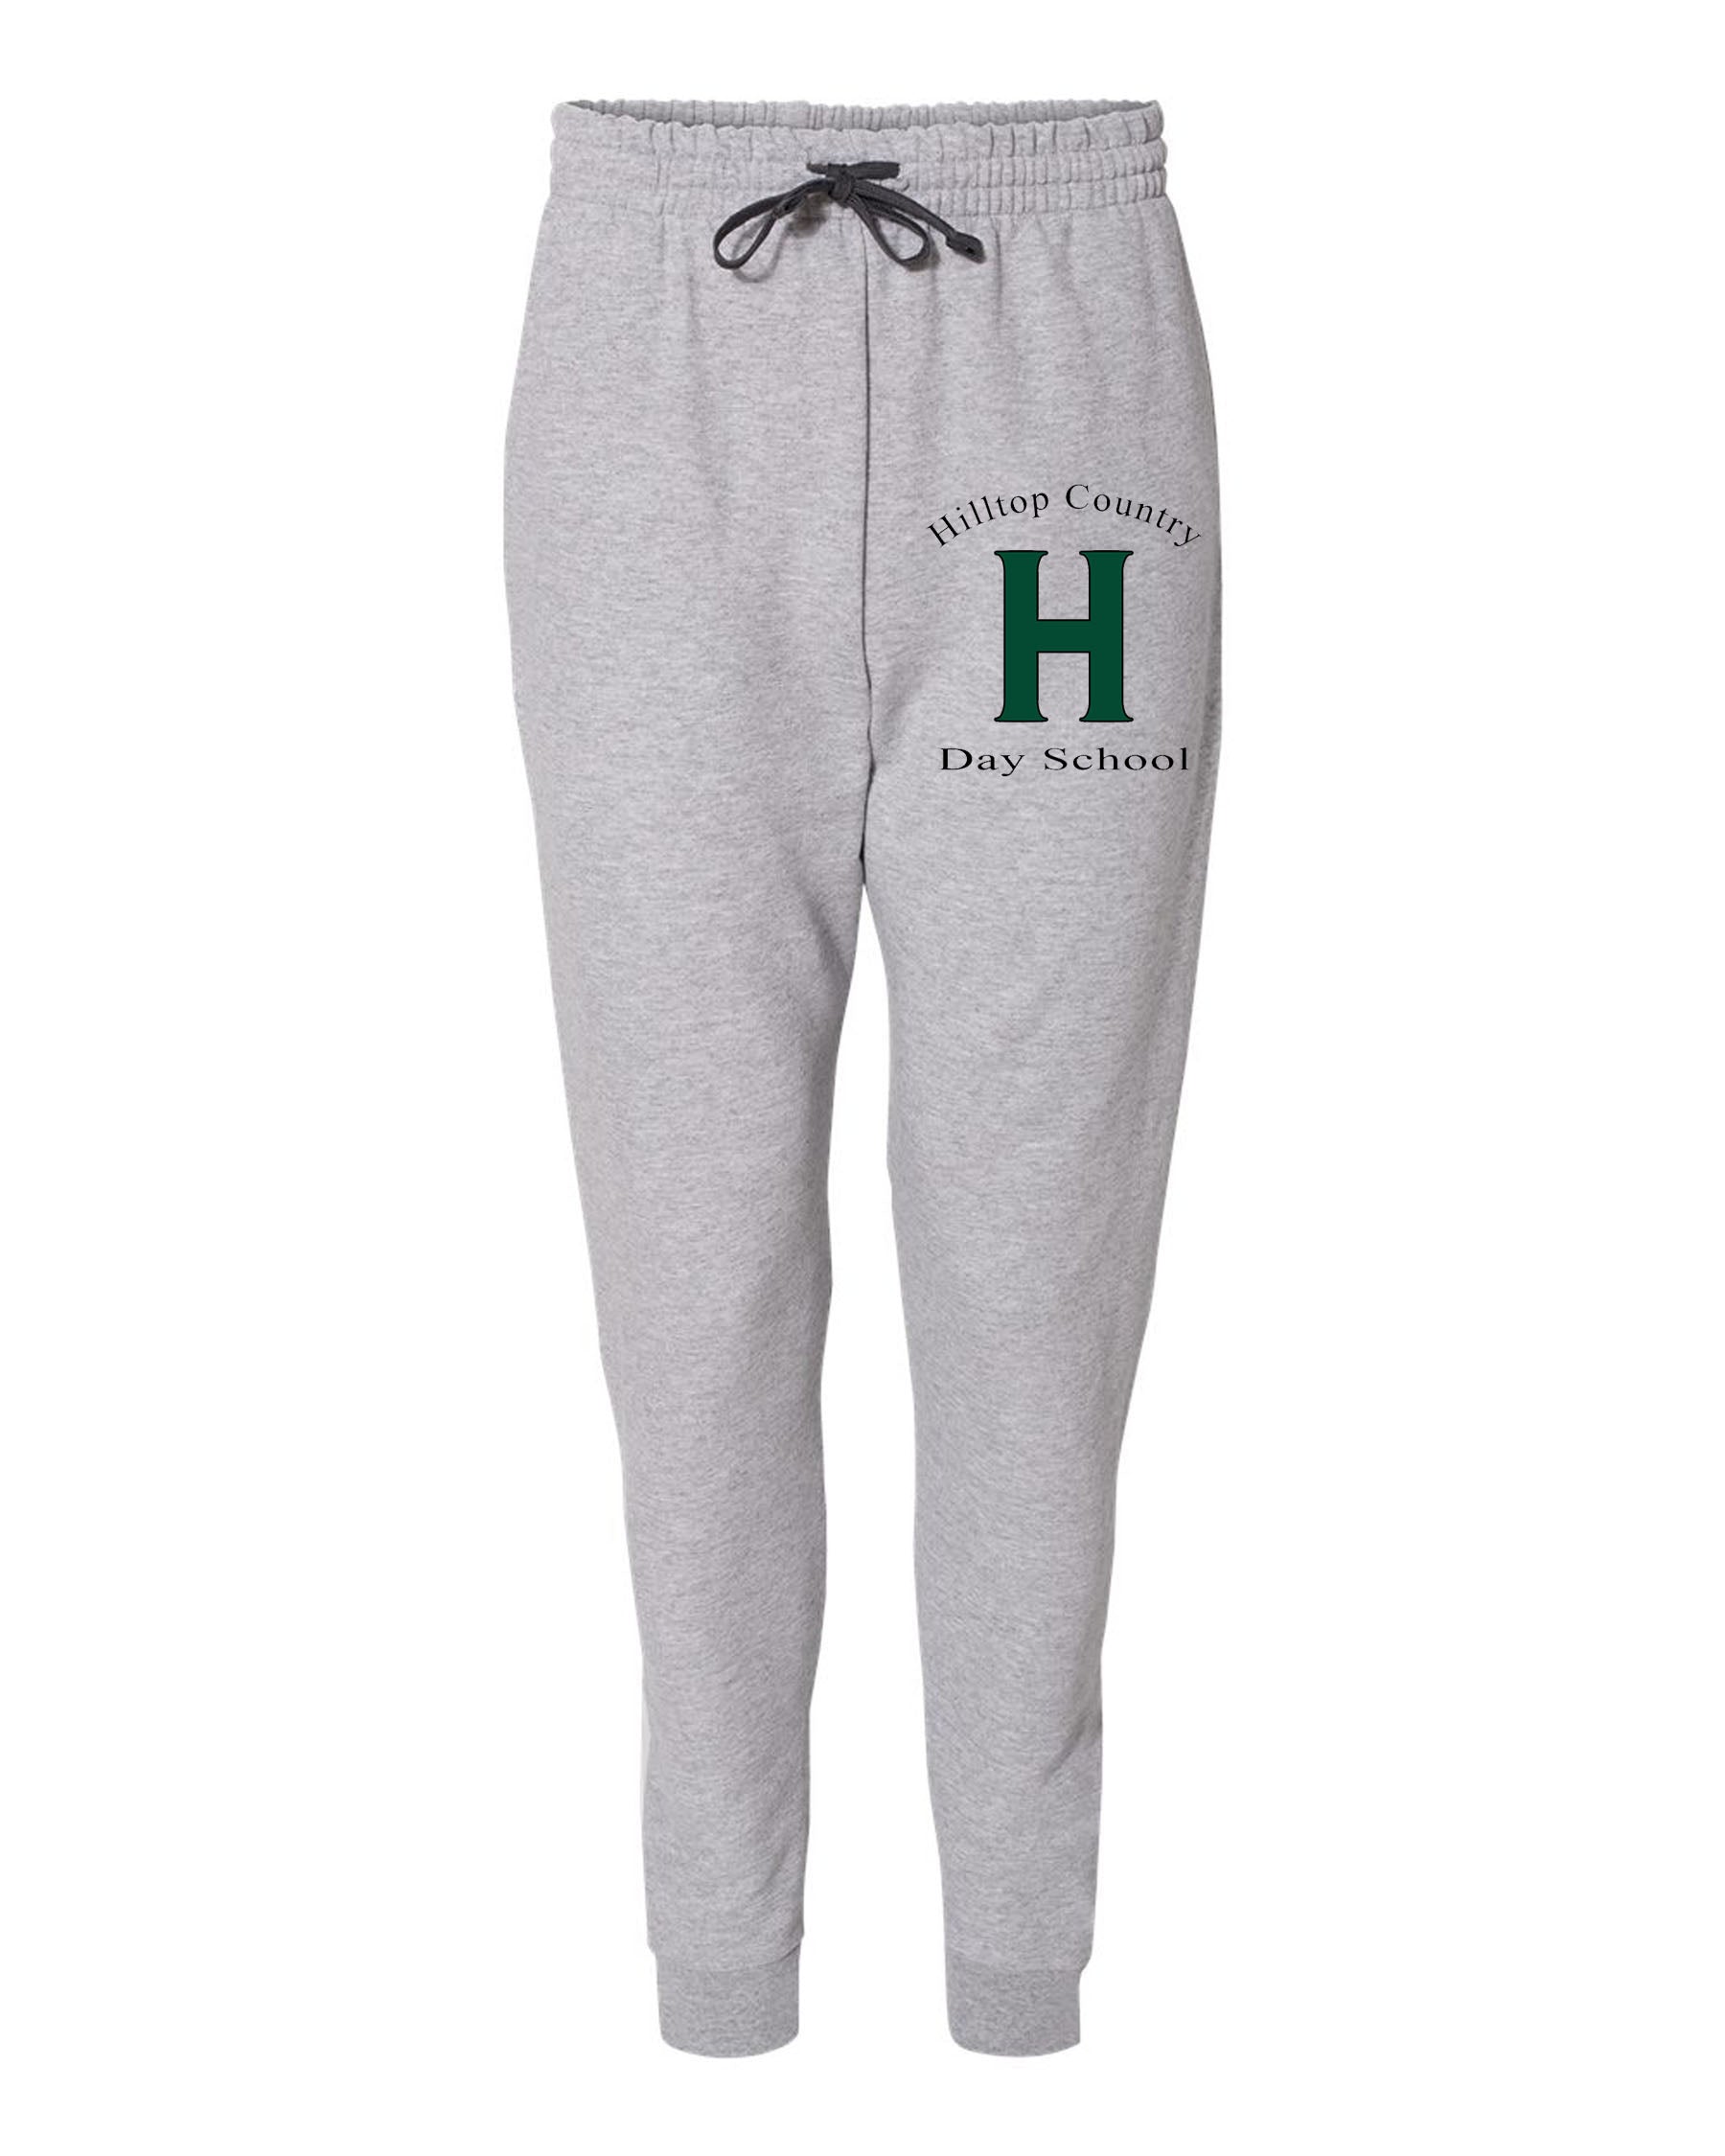 Hilltop design 6 Sweatpants